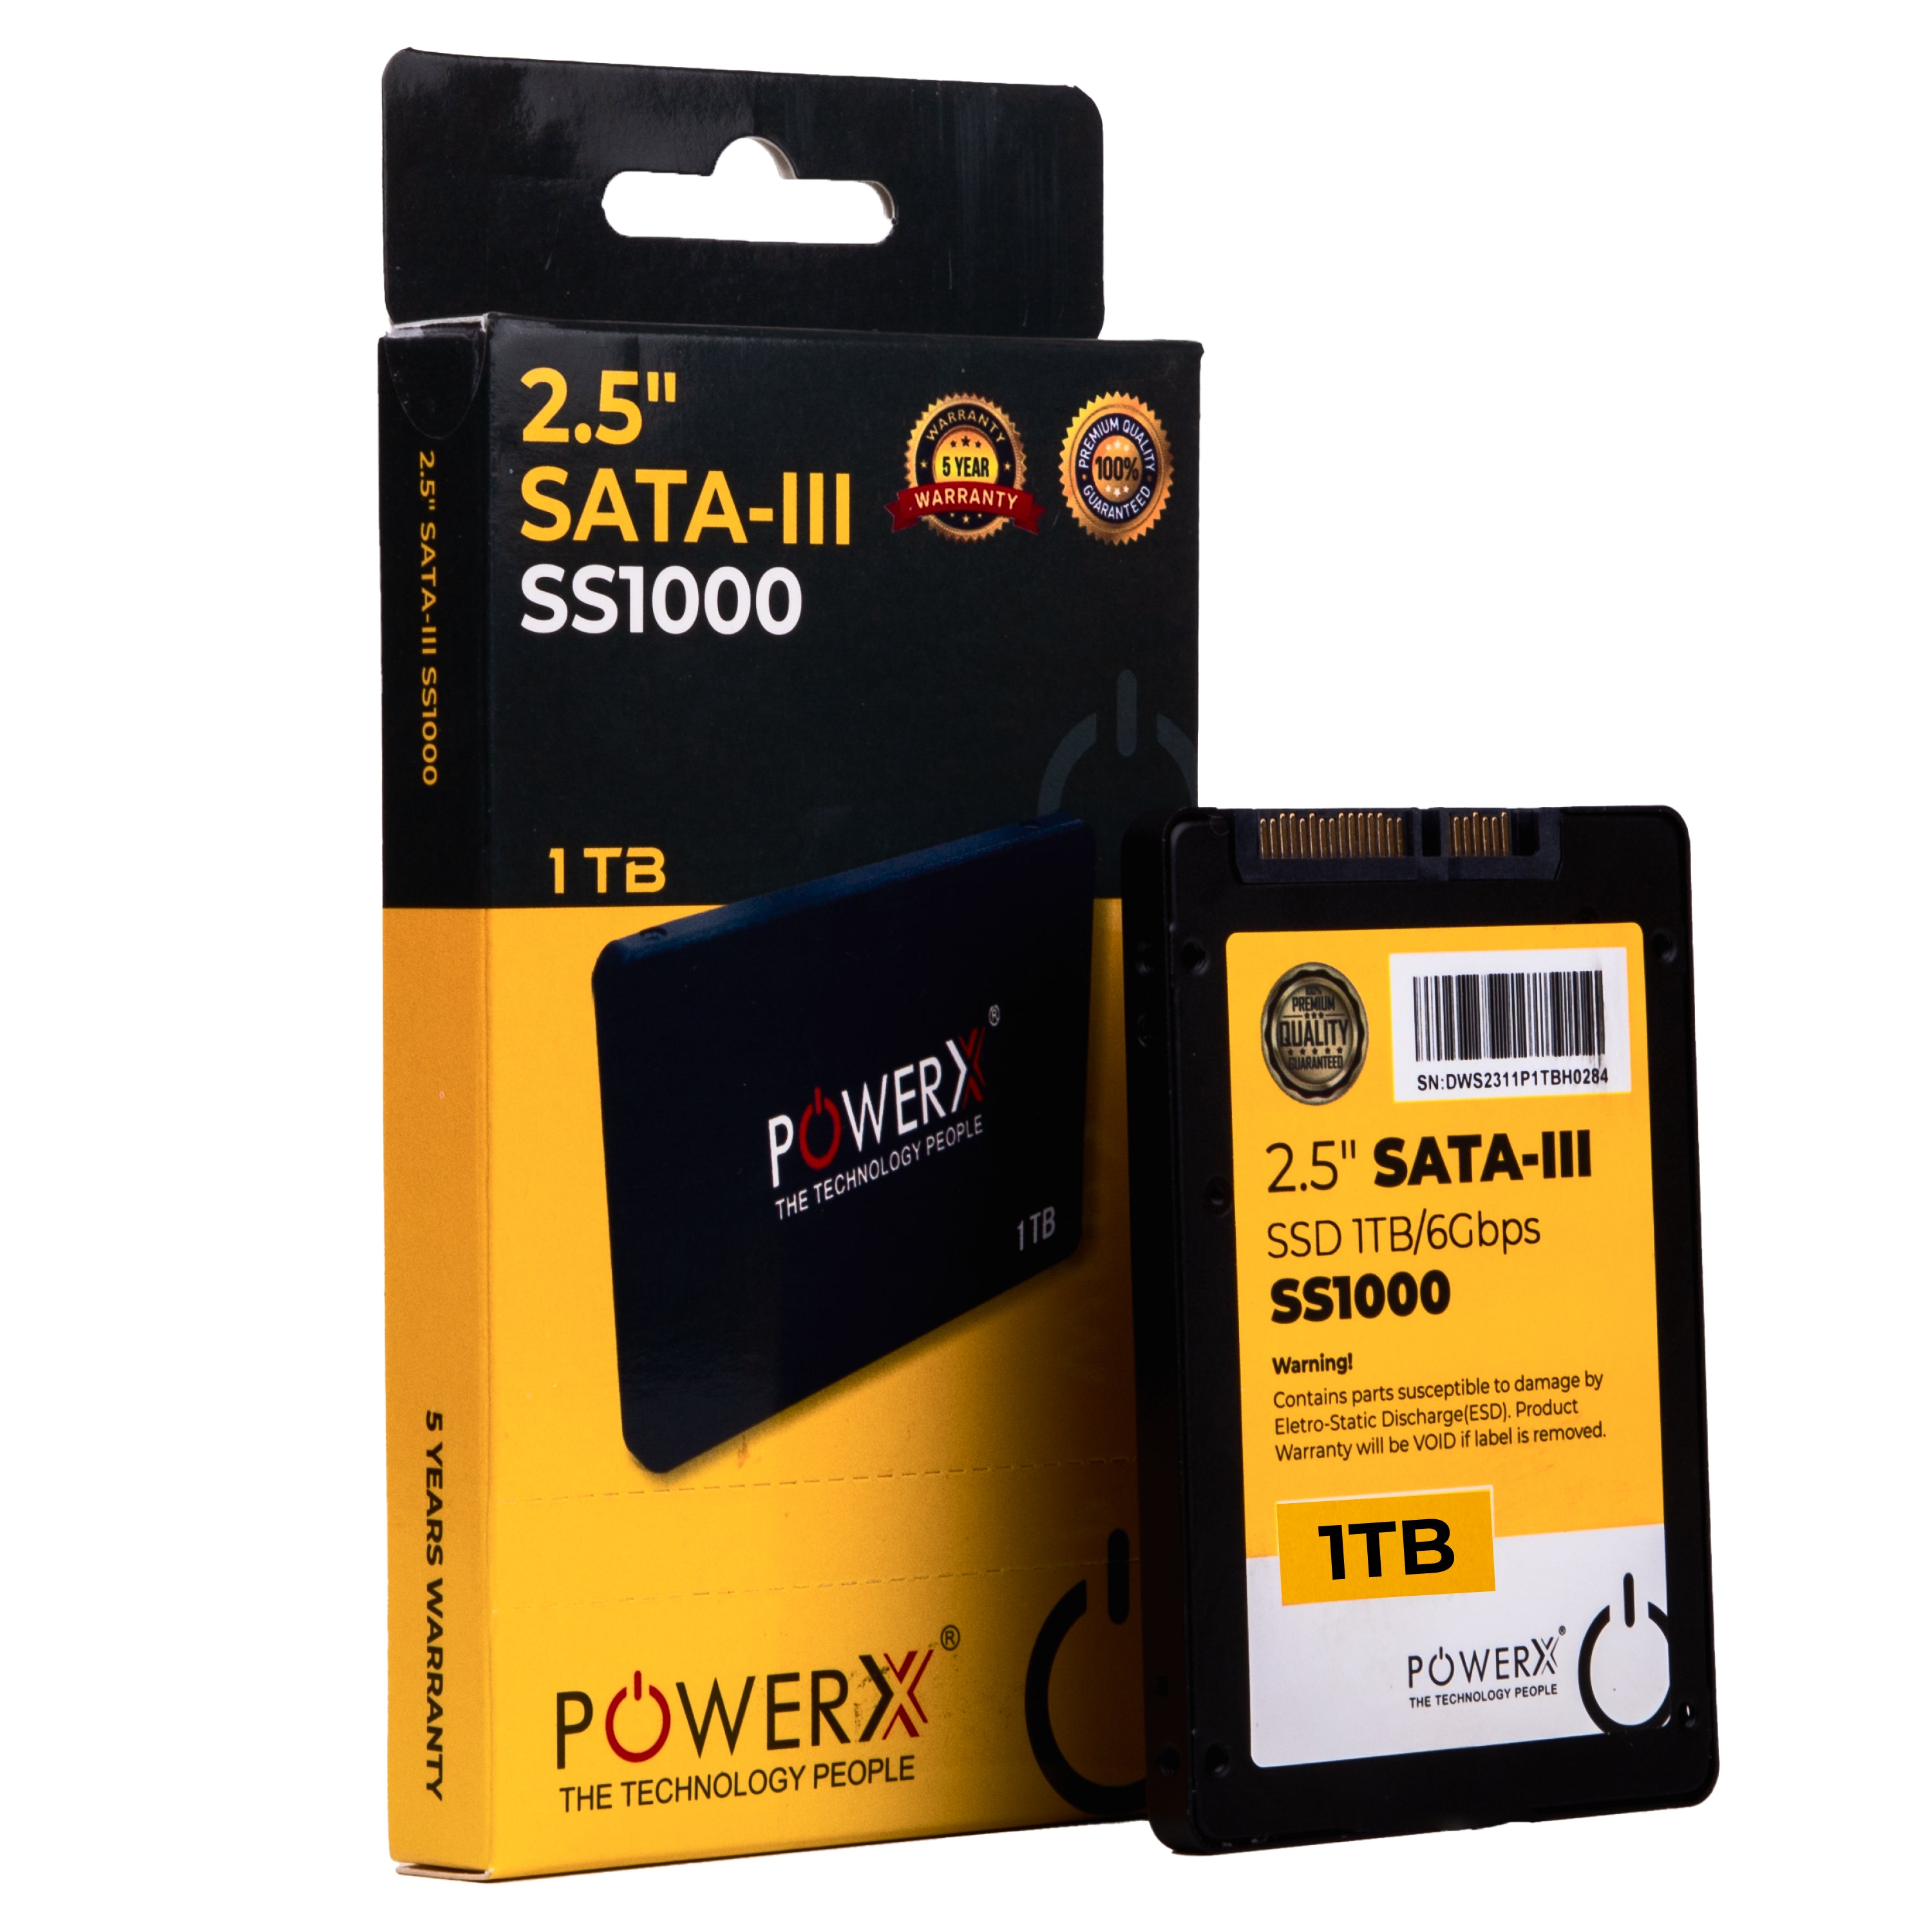 2.5" SATA 3.0 SSD 1TB